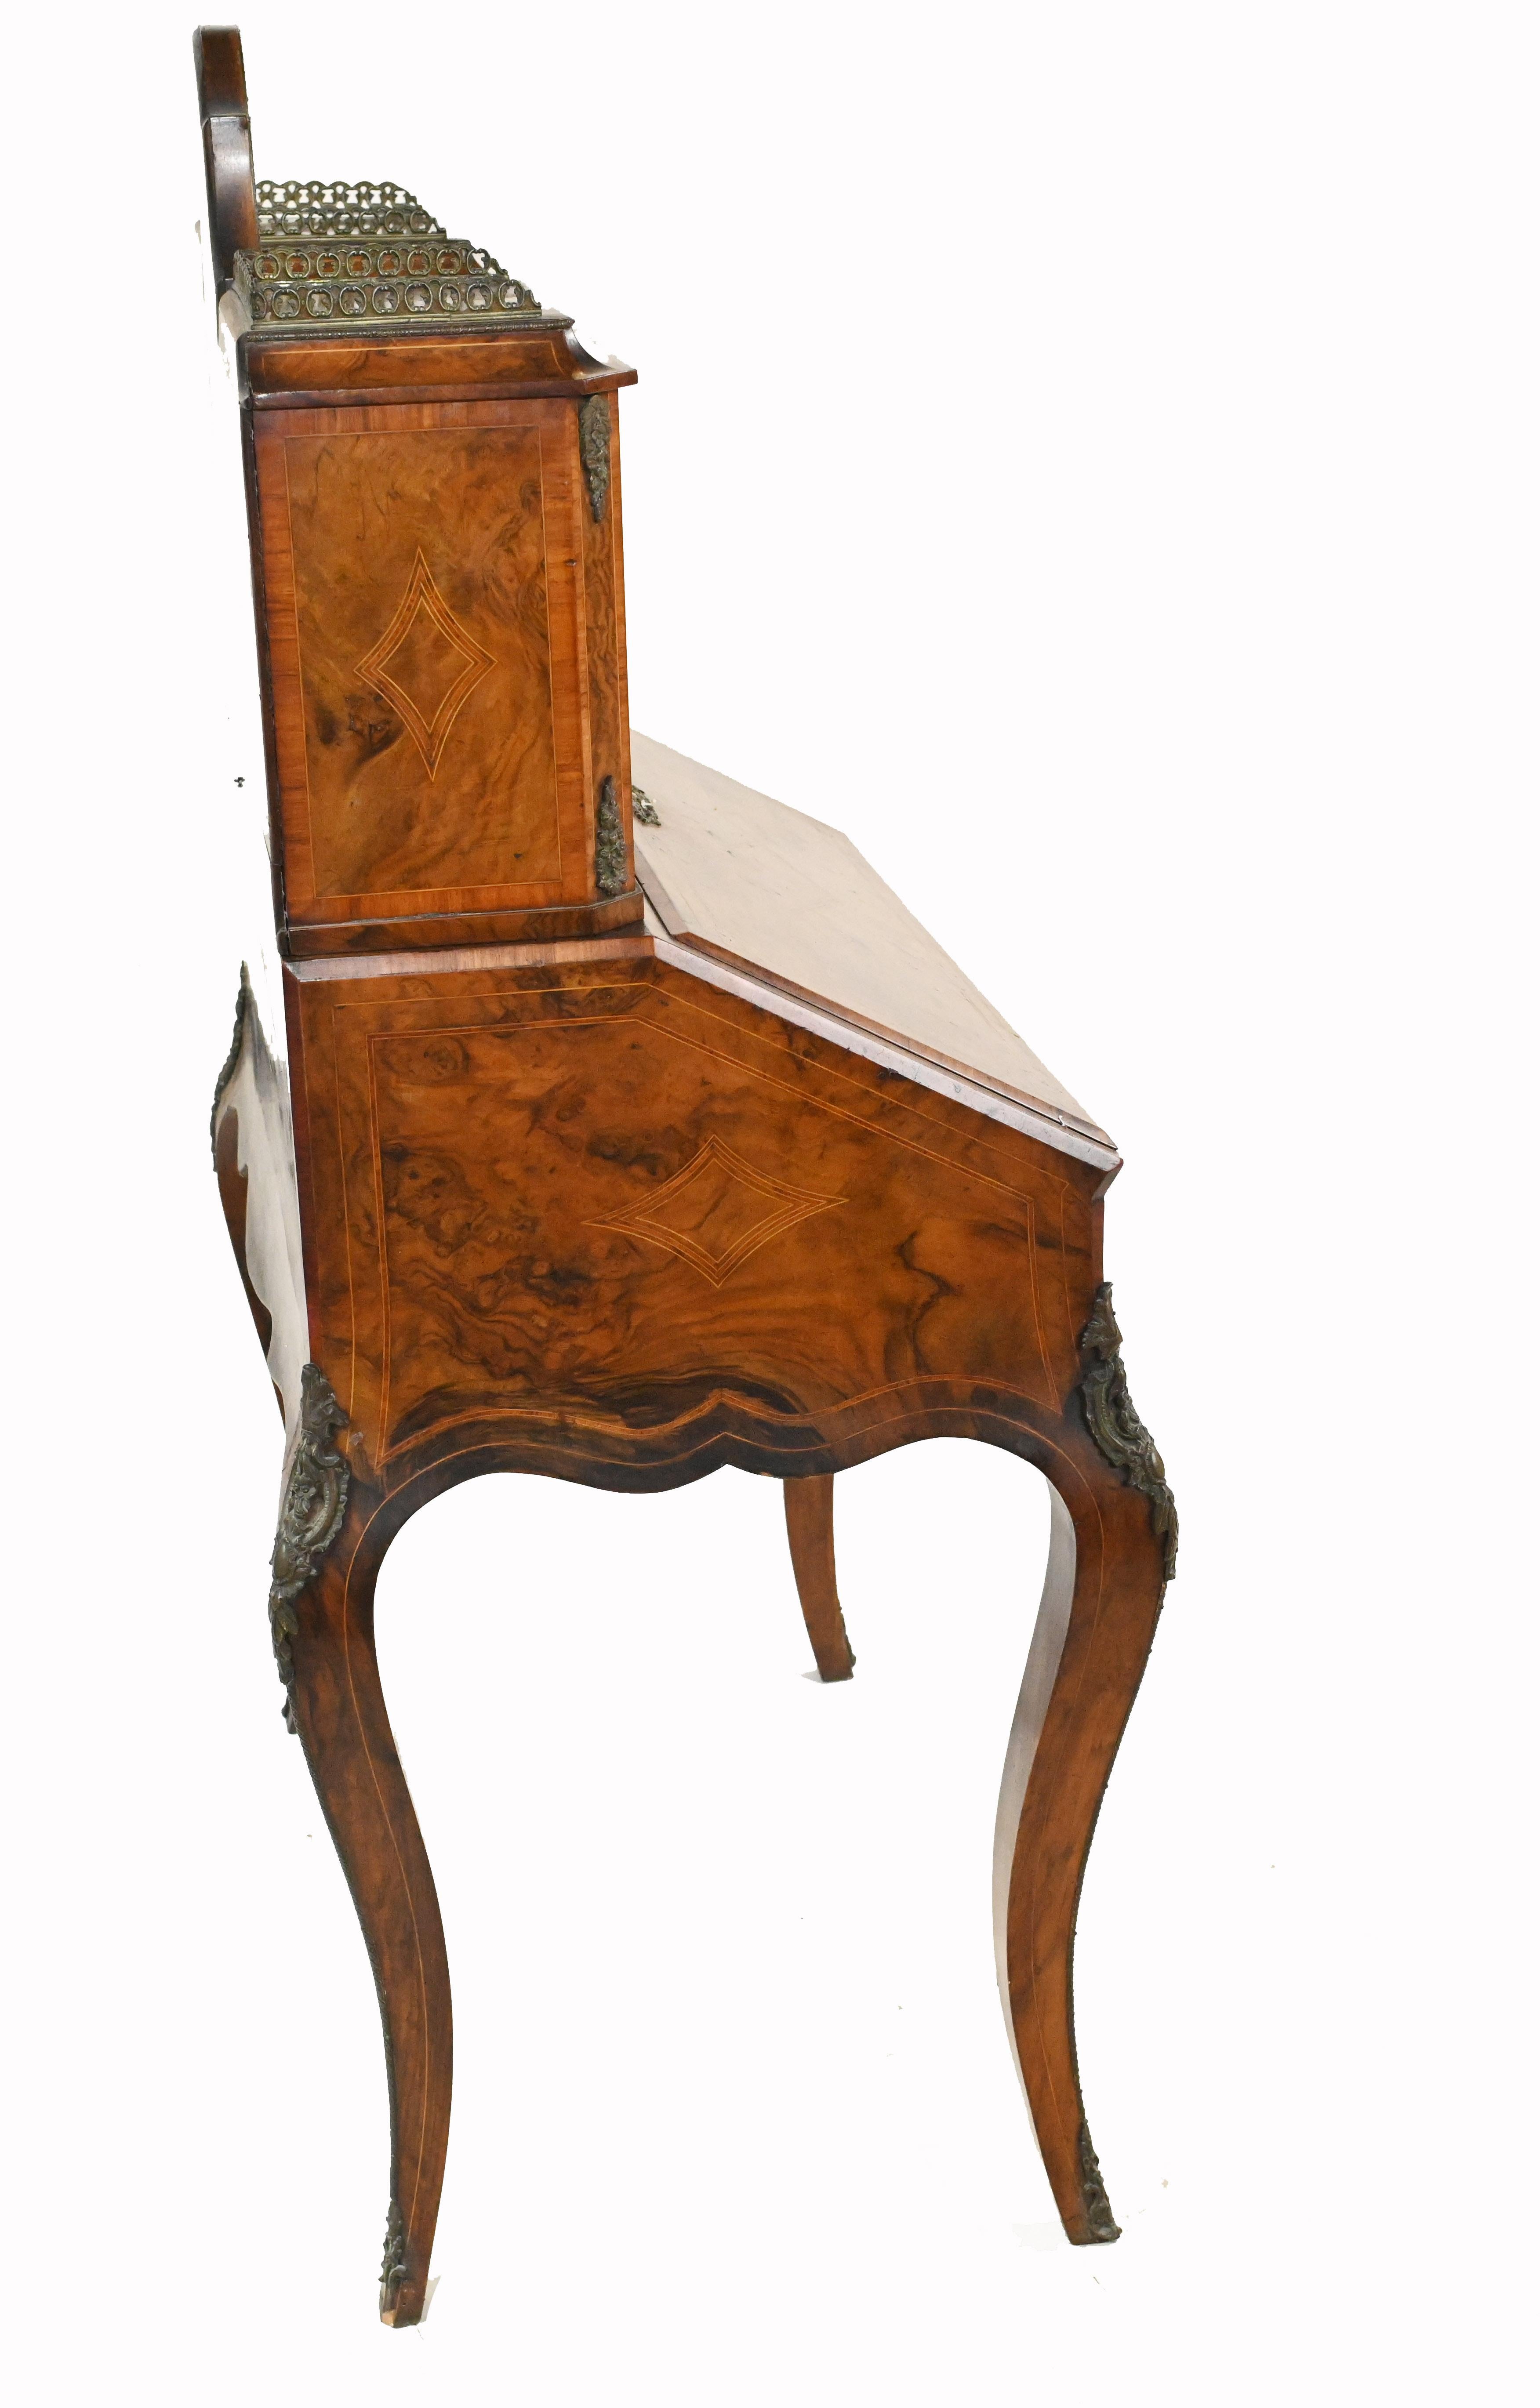 Antique French Desk, Walnut Bonheur De Jour Ladies Desk circa 1880 For Sale 2